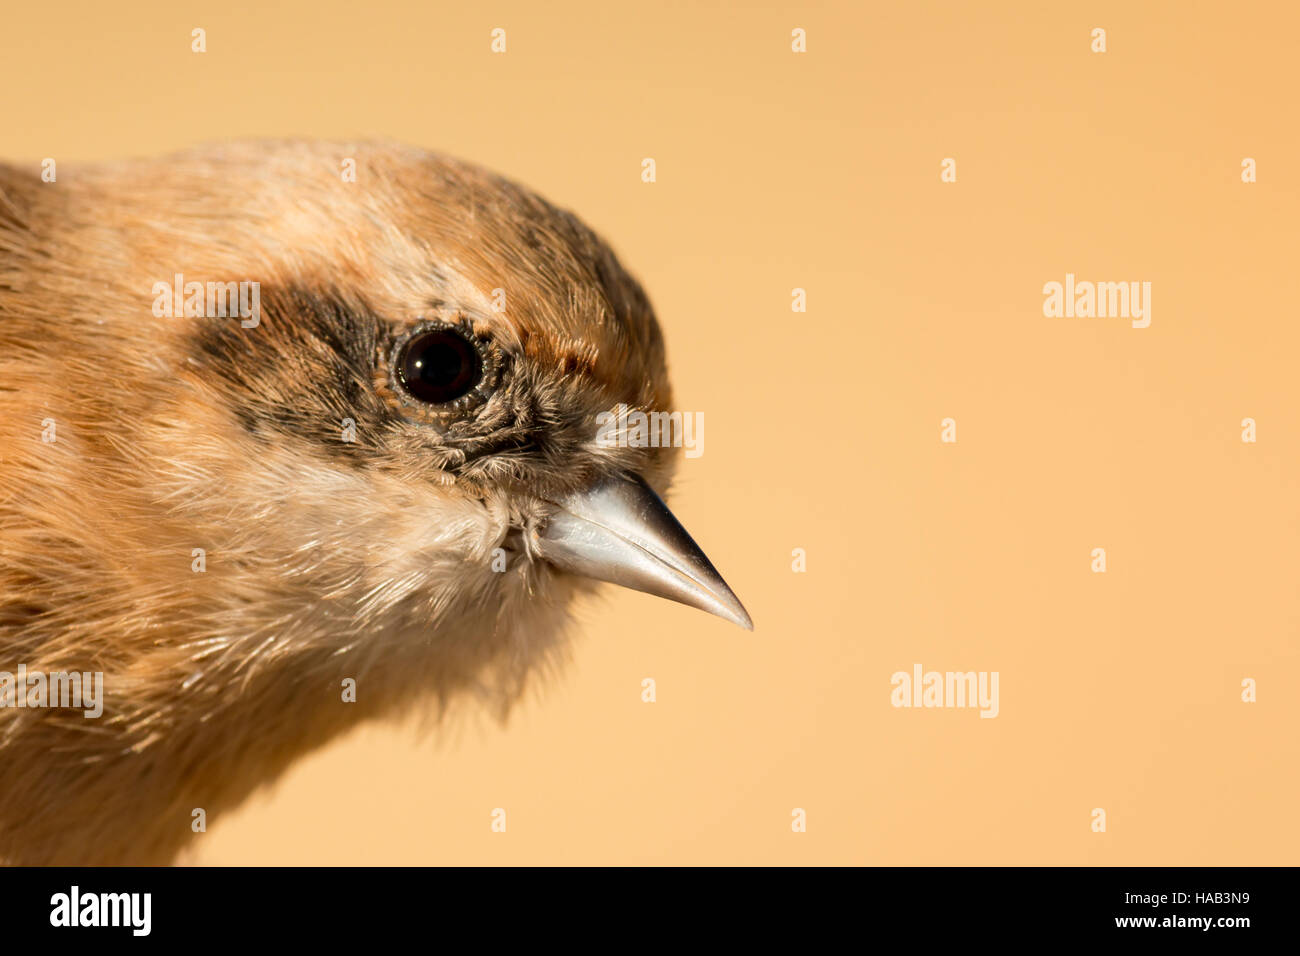 Profil von ein wenig braun wilder Vogel Stockfoto